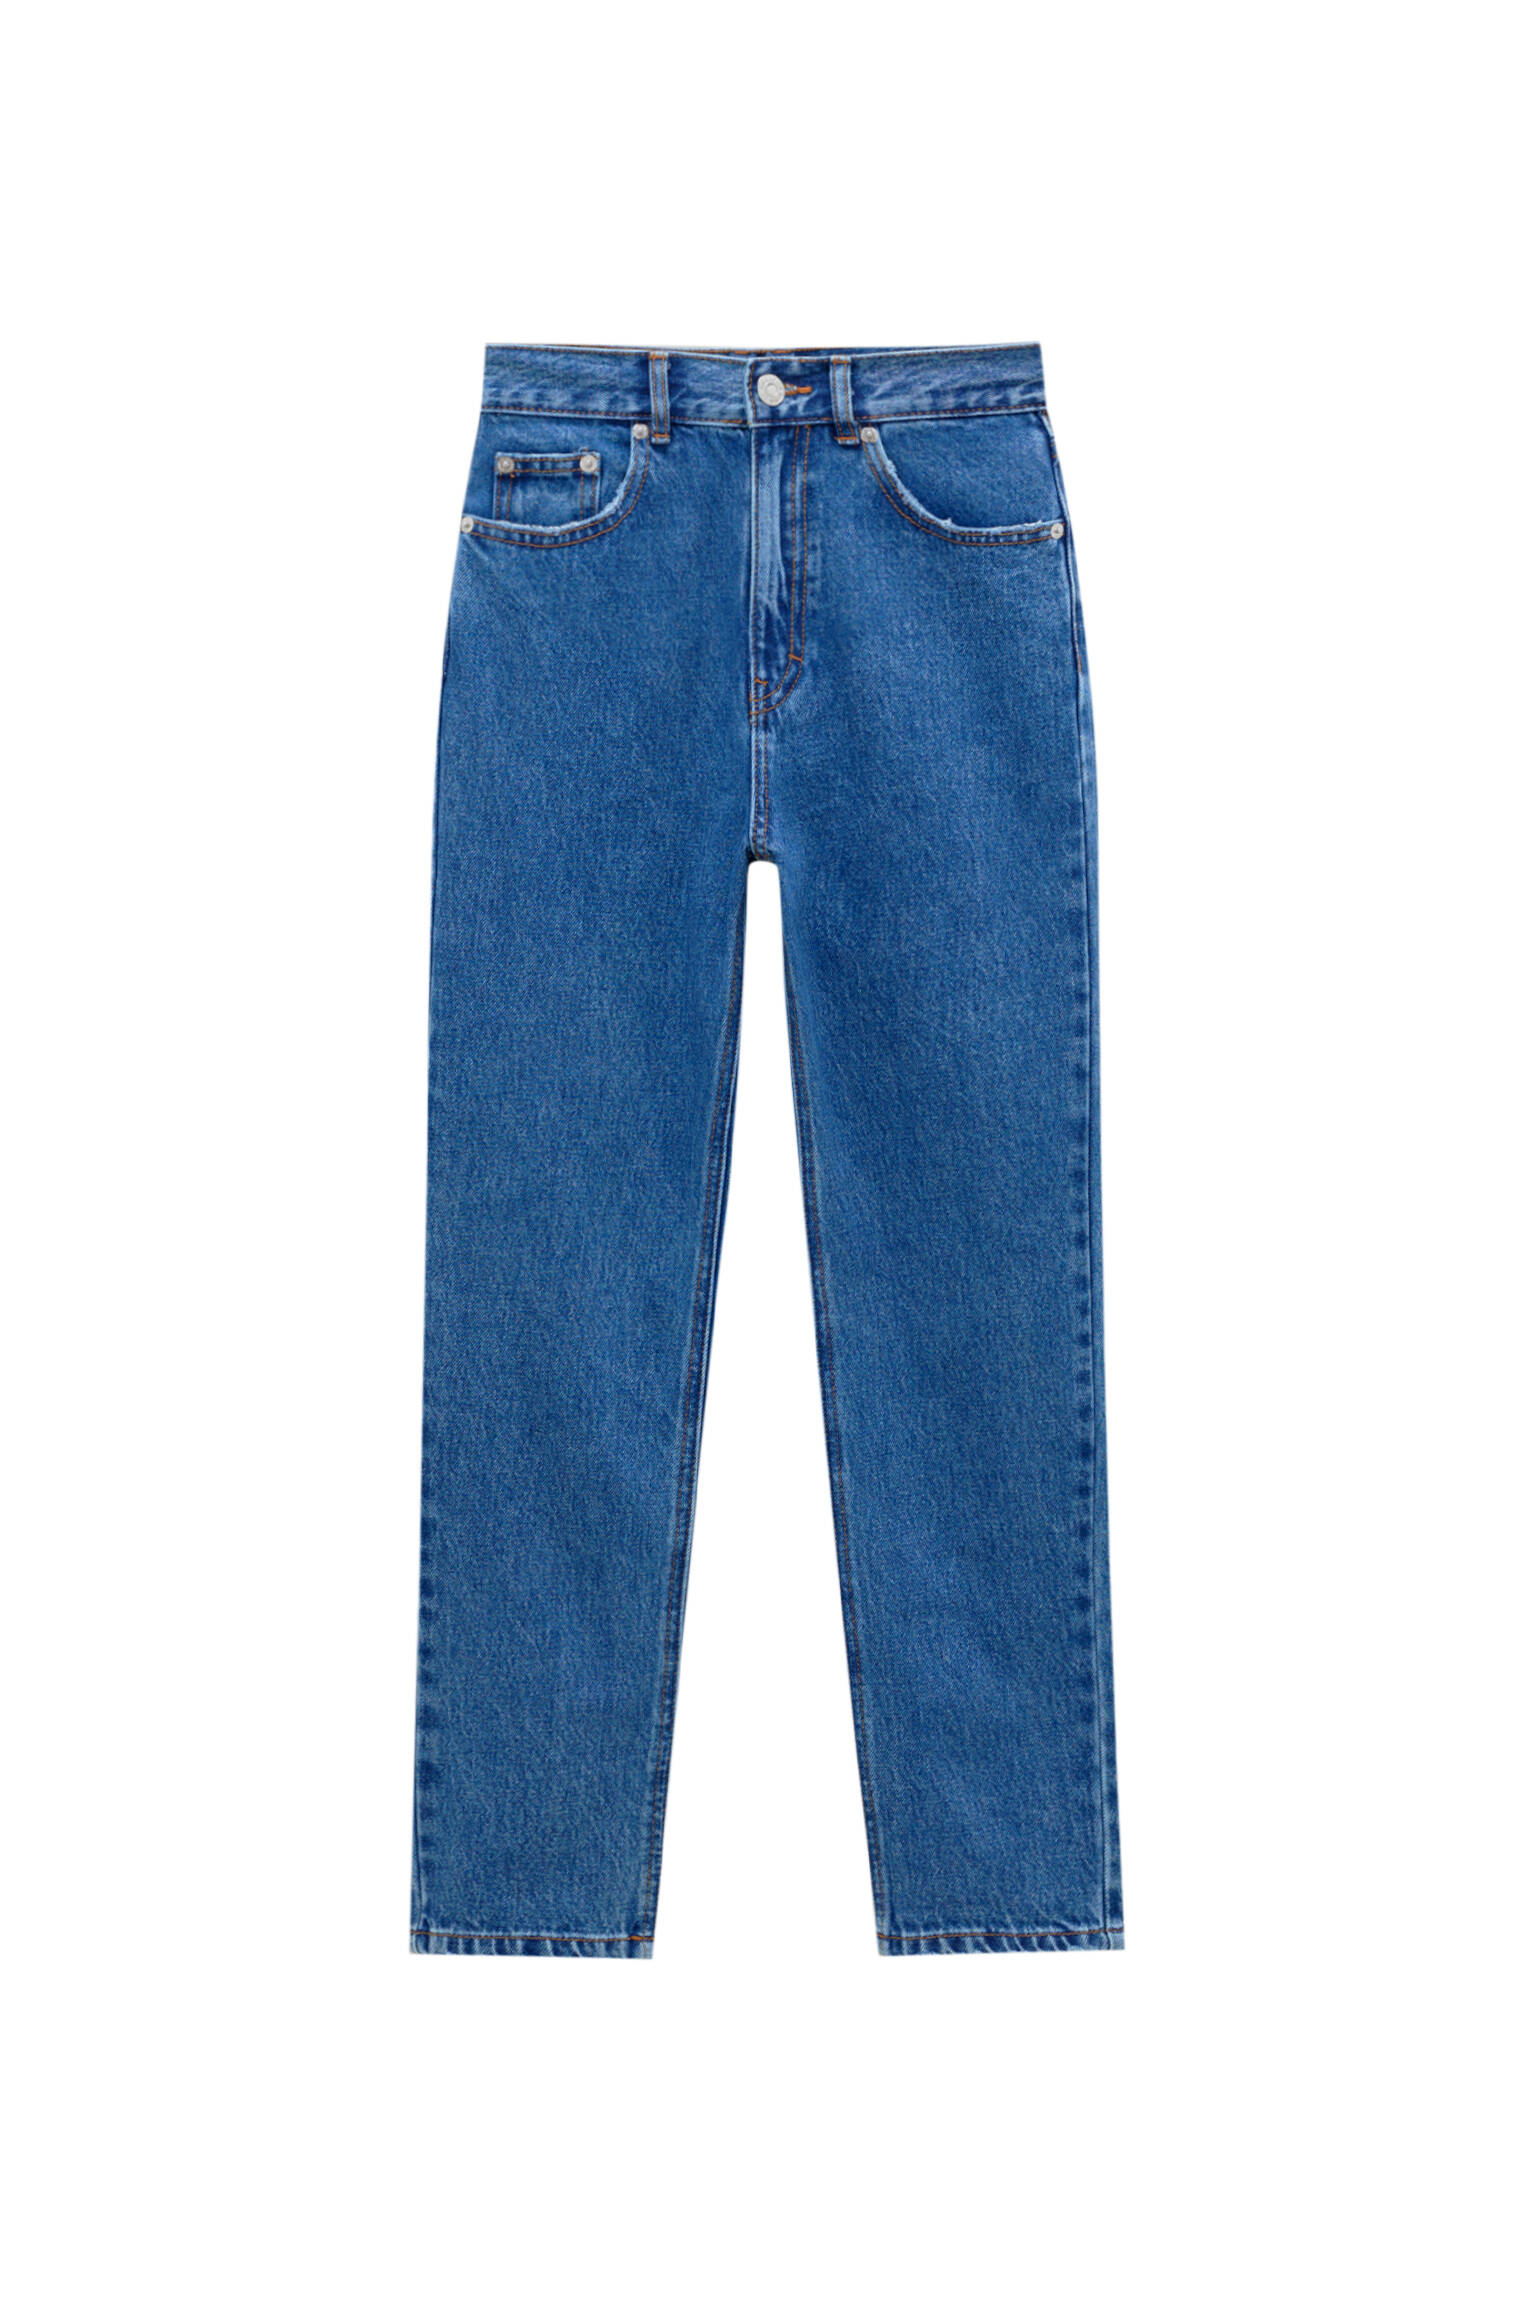 Базовые джинсы mom fit - органический хлопок (не менее 50%) ТЕМНО-СИНИЙ Pull & Bear